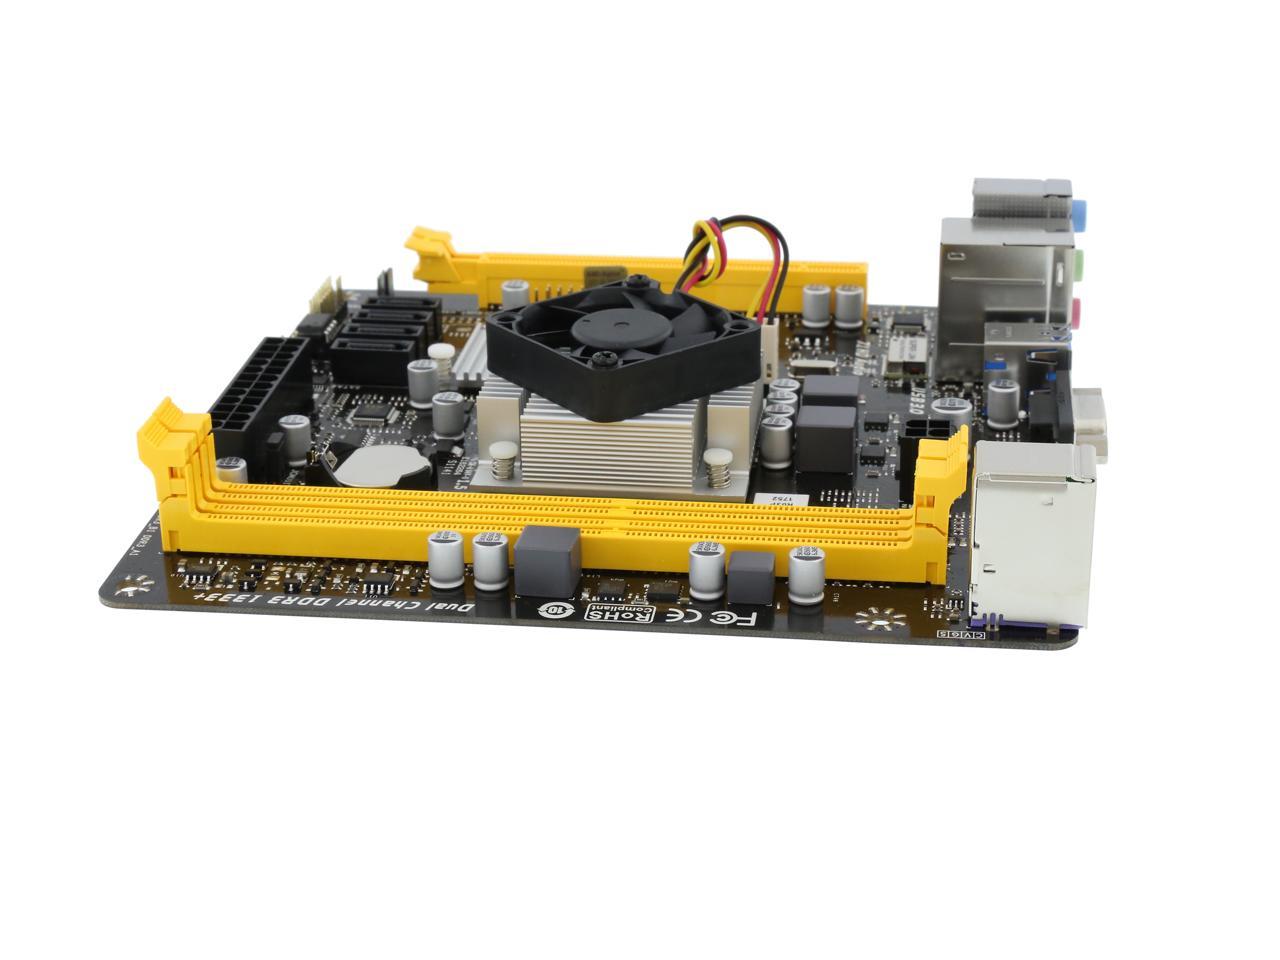 BIOSTAR A68N-5600 AMD A10-4655 (Quad-core 2.0G, turbo 2.8G 